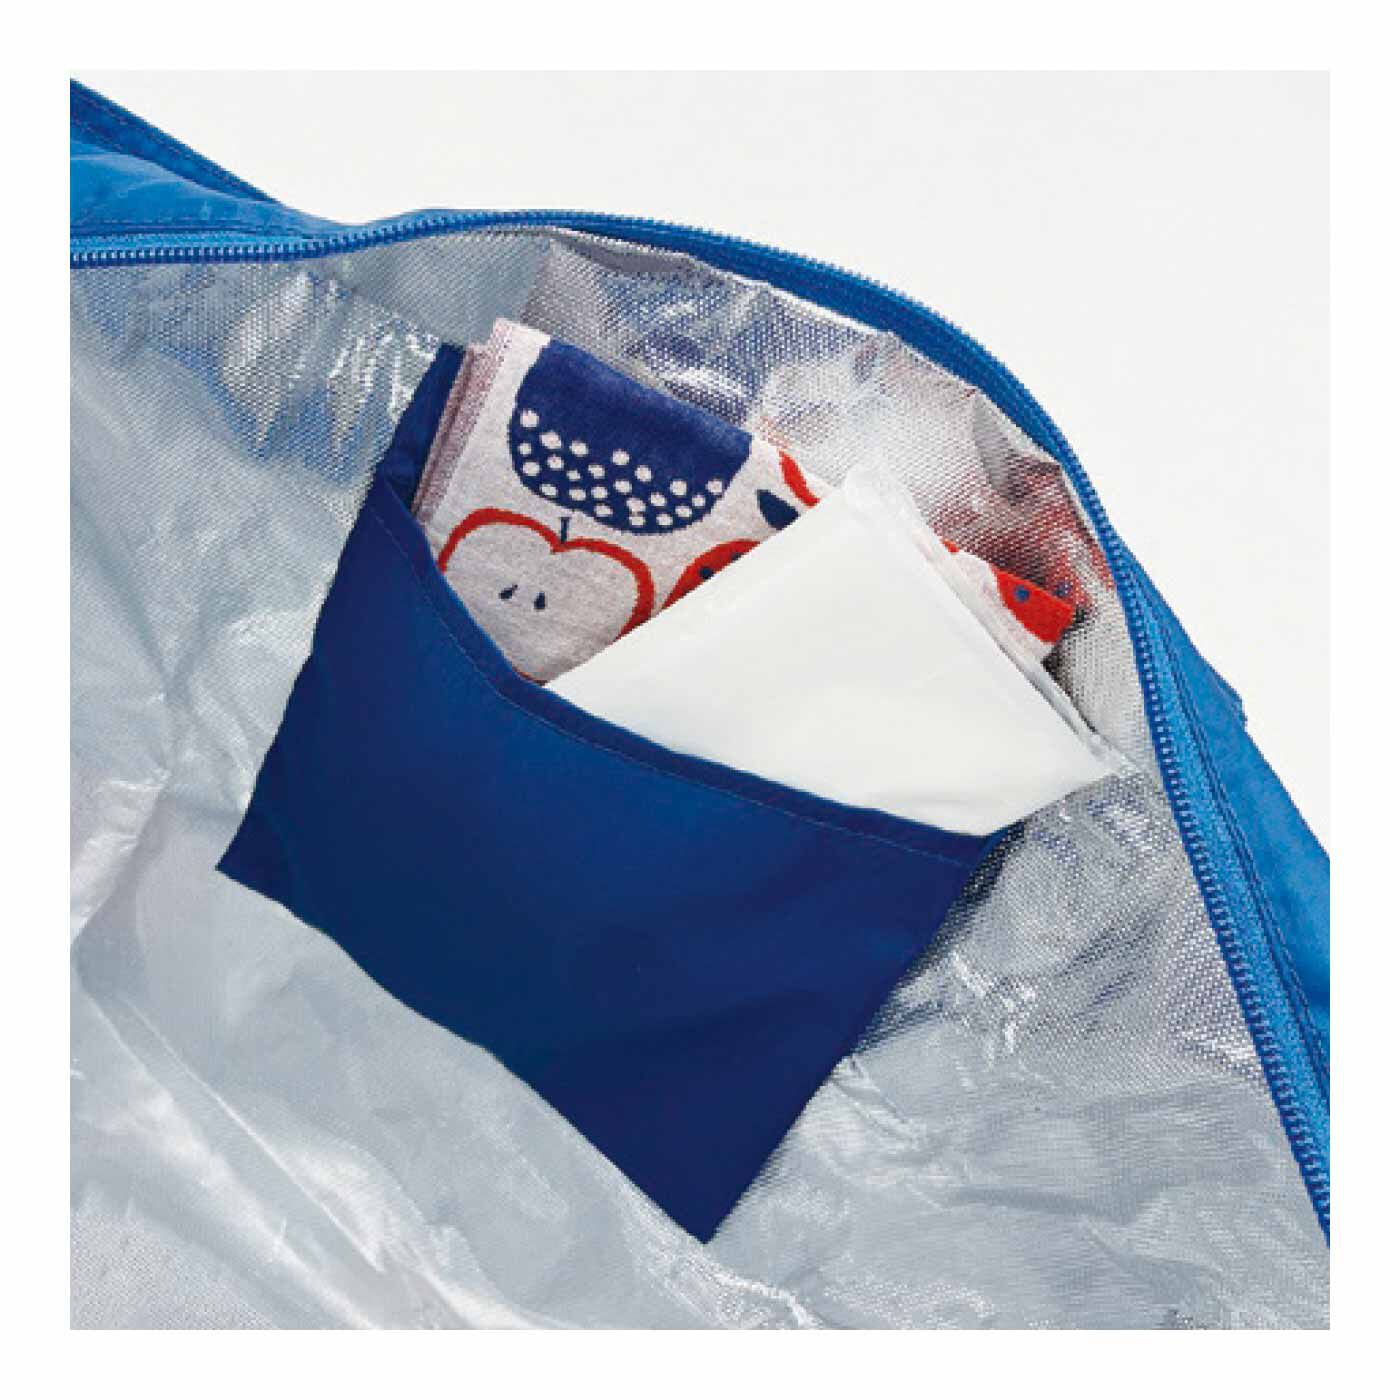 FELISSIMO PARTNERS|たたんで持ち運び たっぷり入る簡易保冷のショッピングバッグ|保冷剤が入る内ポケット付き。小物の整理にも。